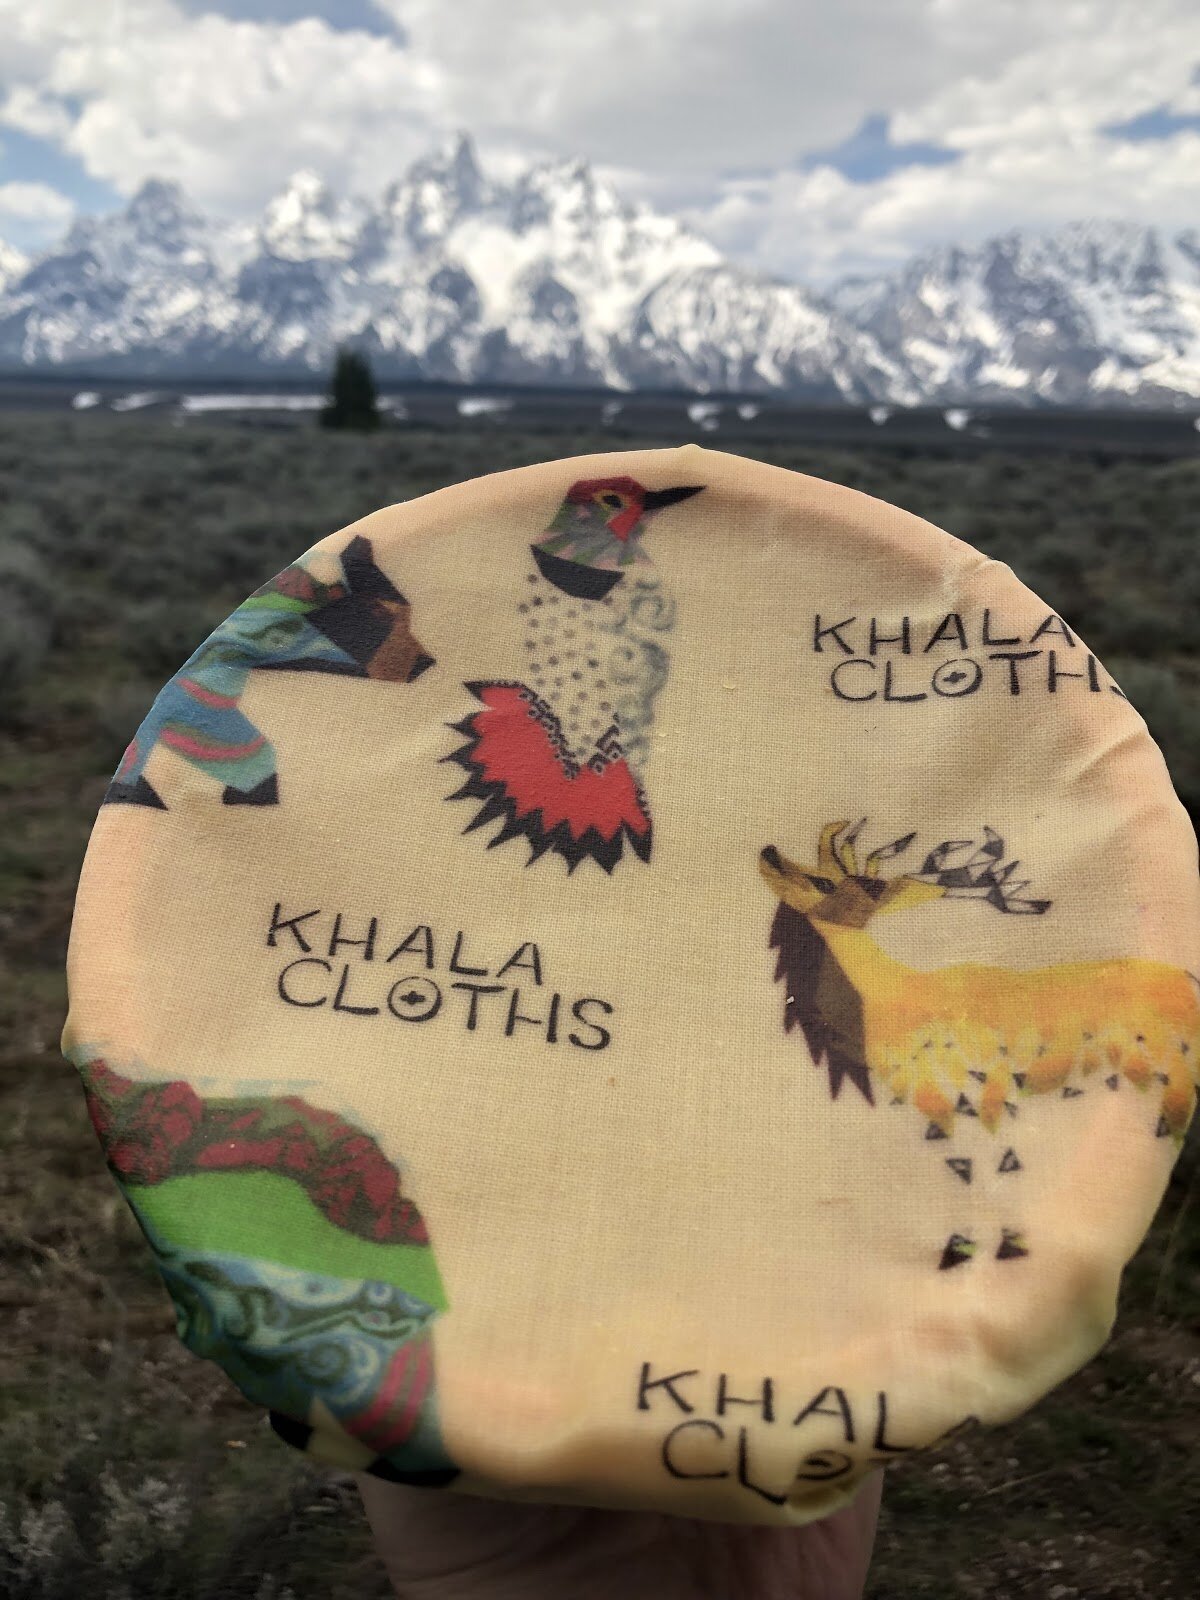 Partnership of 2019: Khala & Company + National Parks Conservation Association